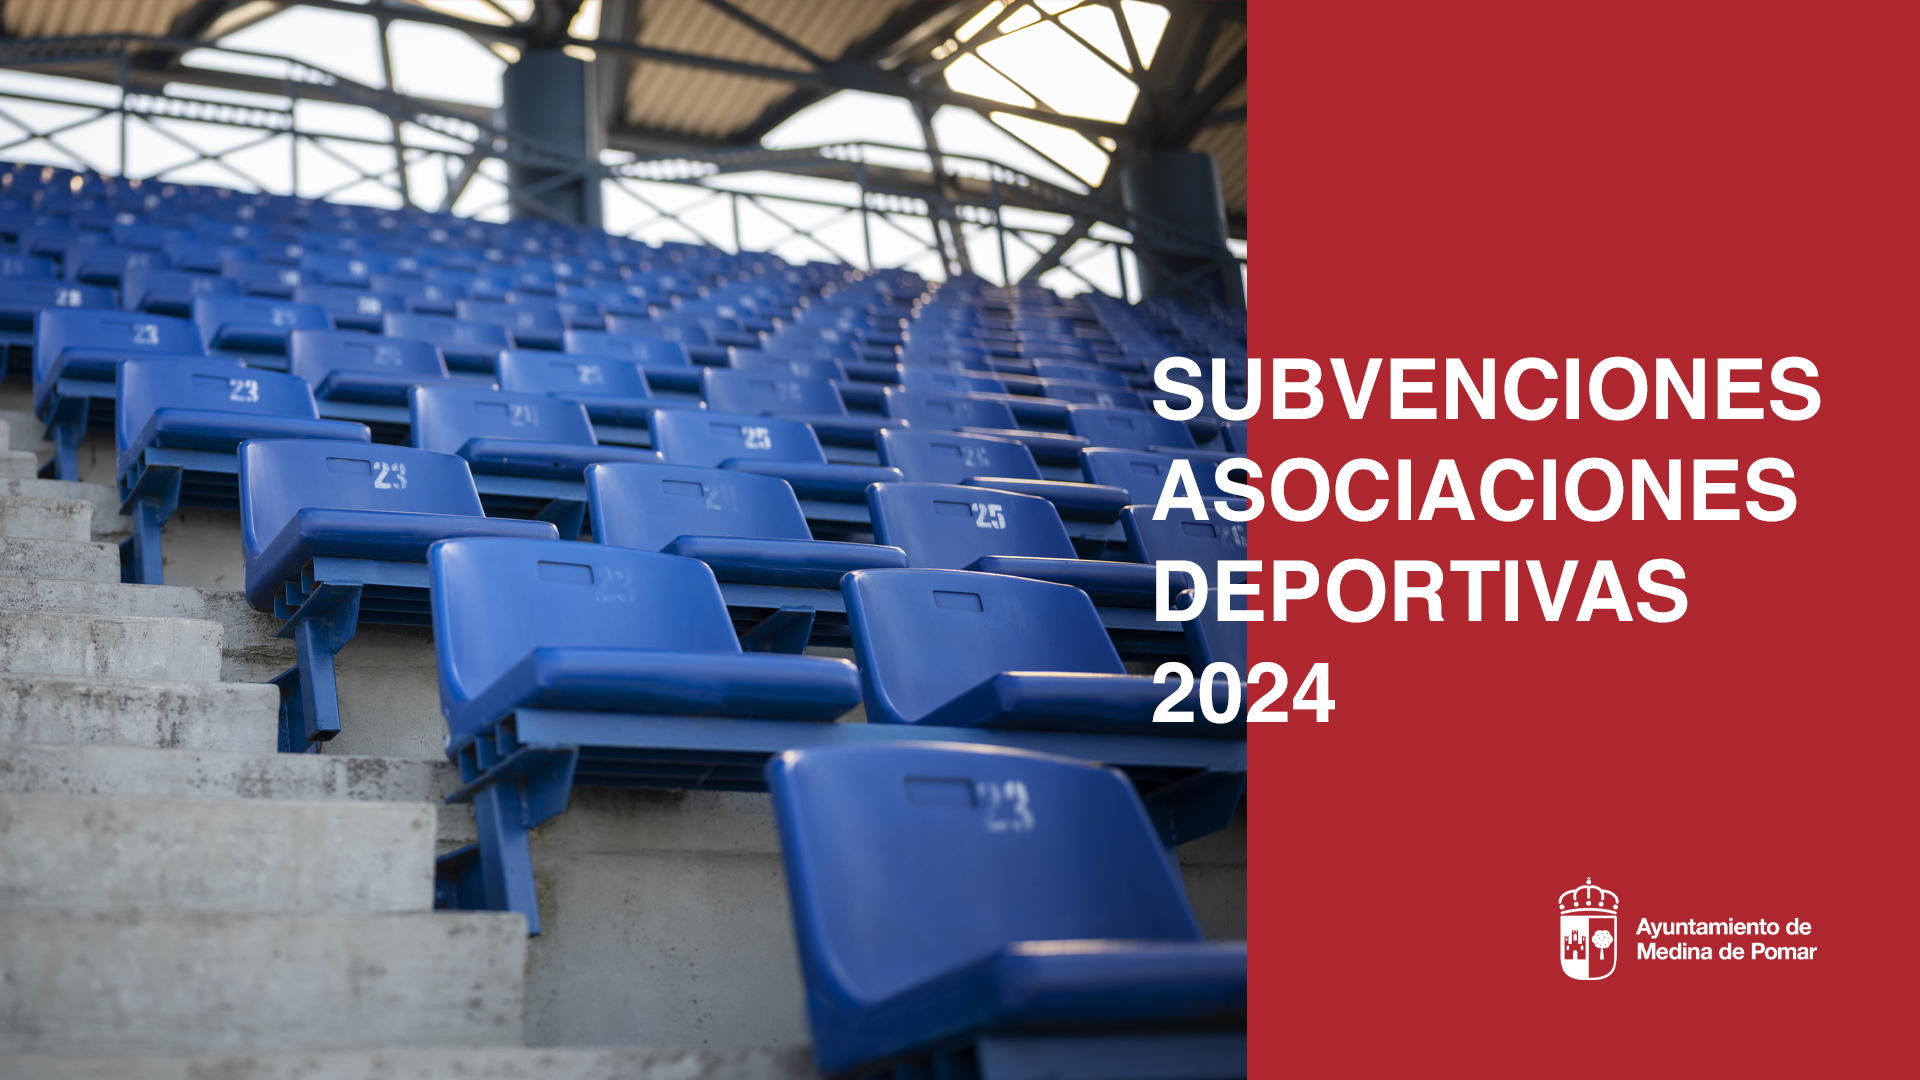 Subvenciones a asociaciones deportivas 2024